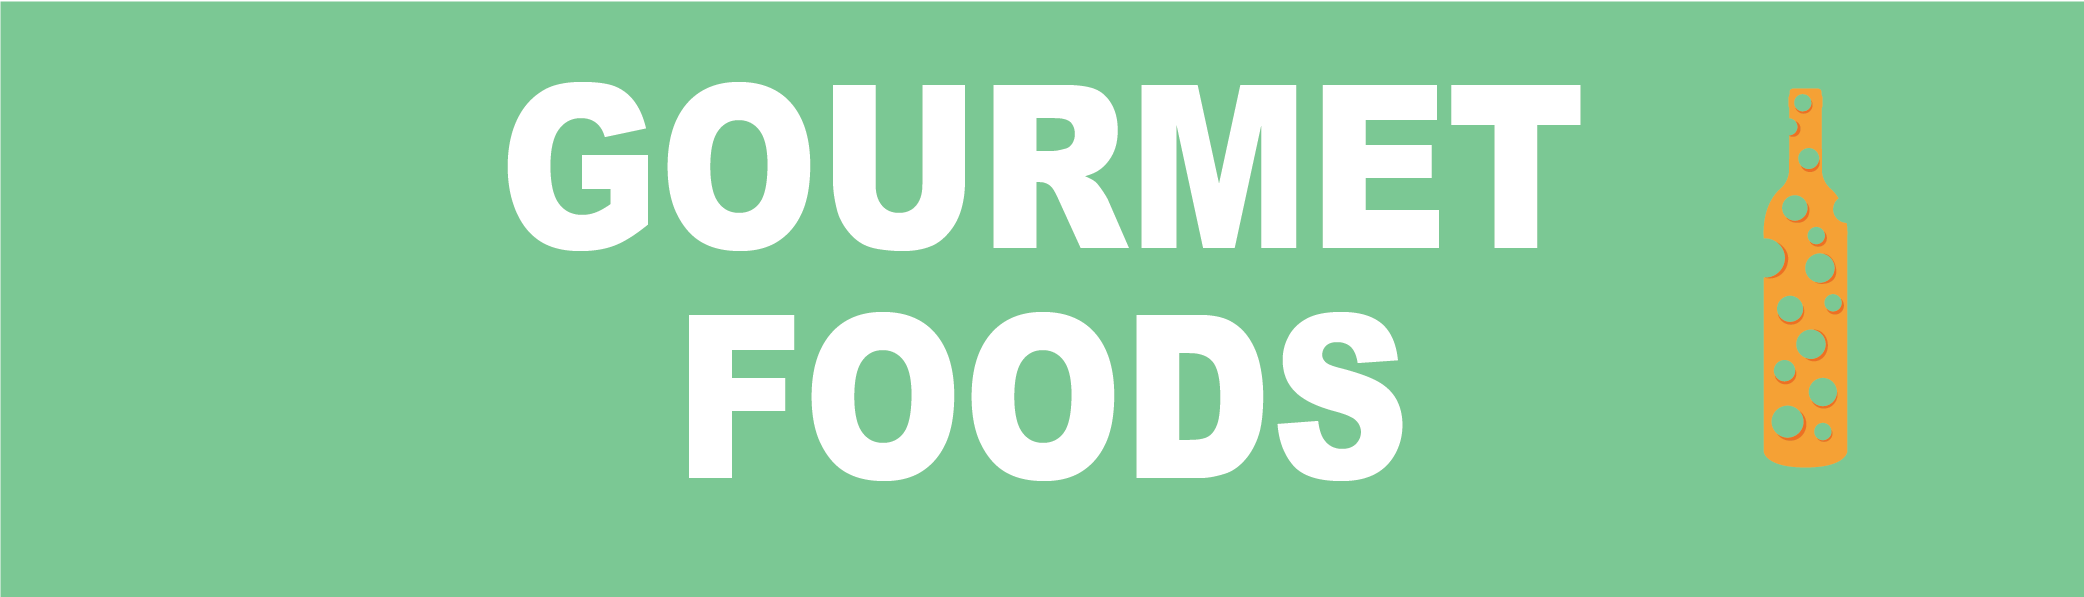 Gourmet Foods